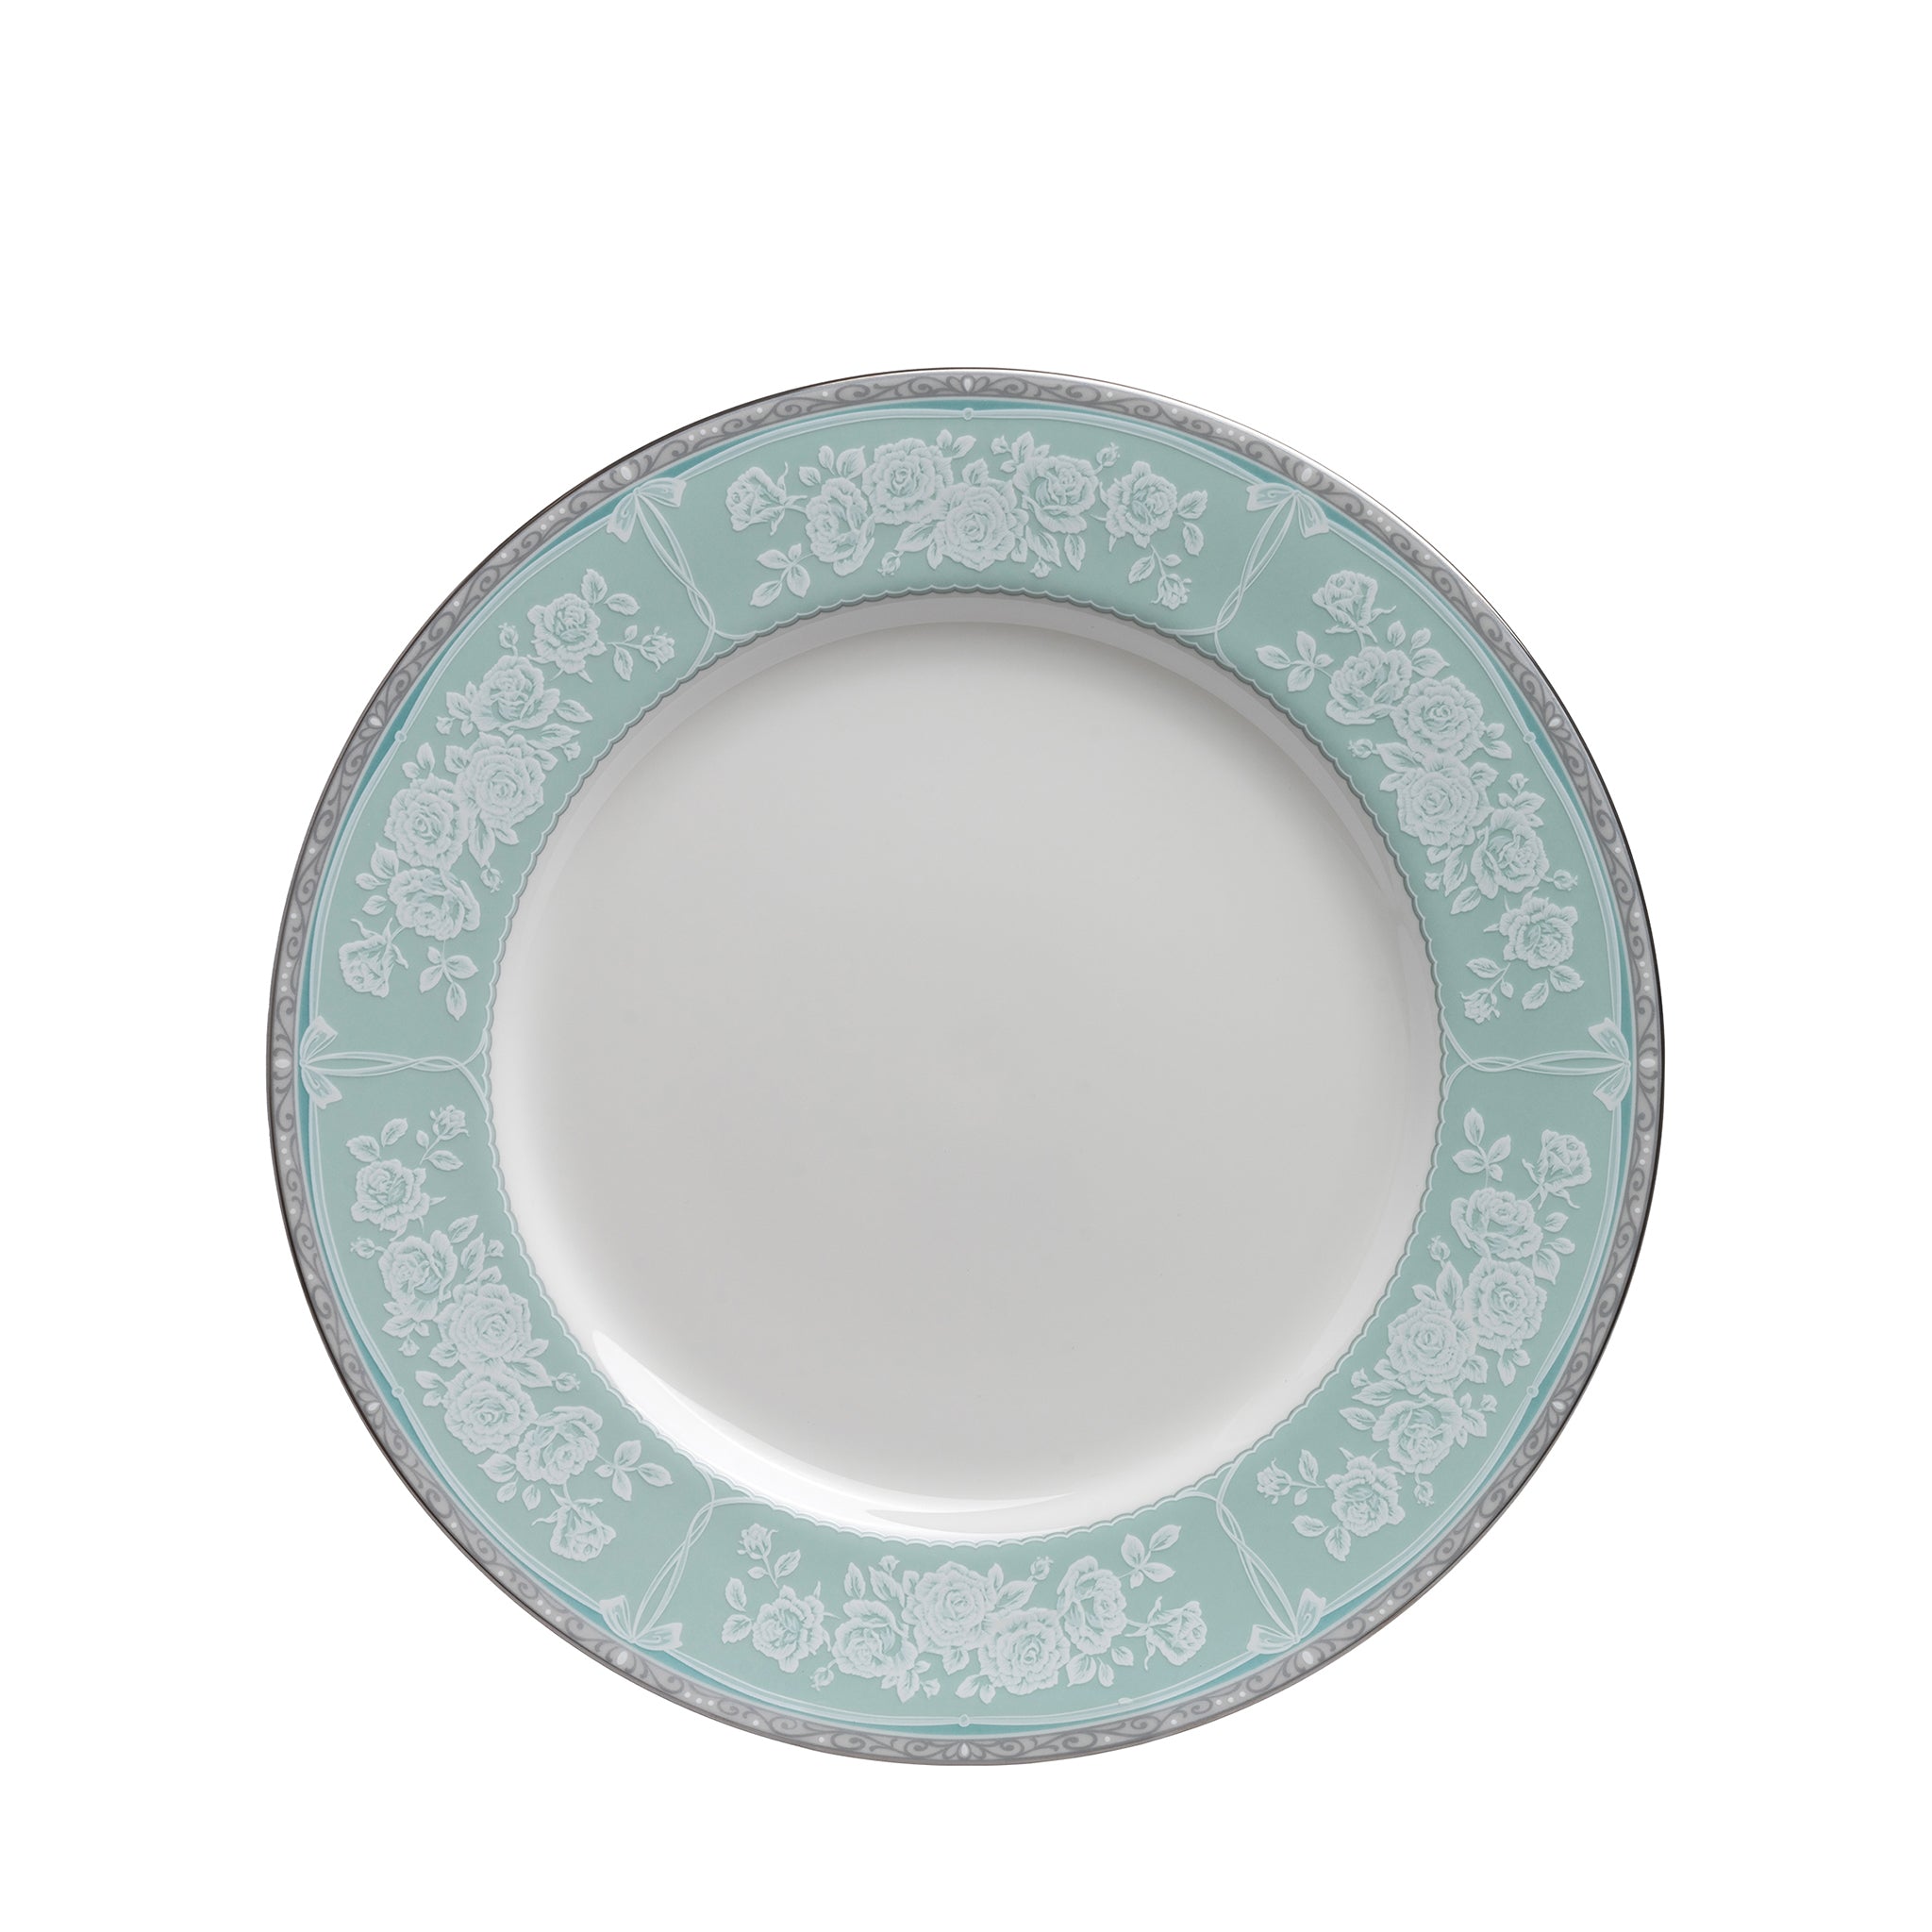 narumi graceair 23cm plate plates 